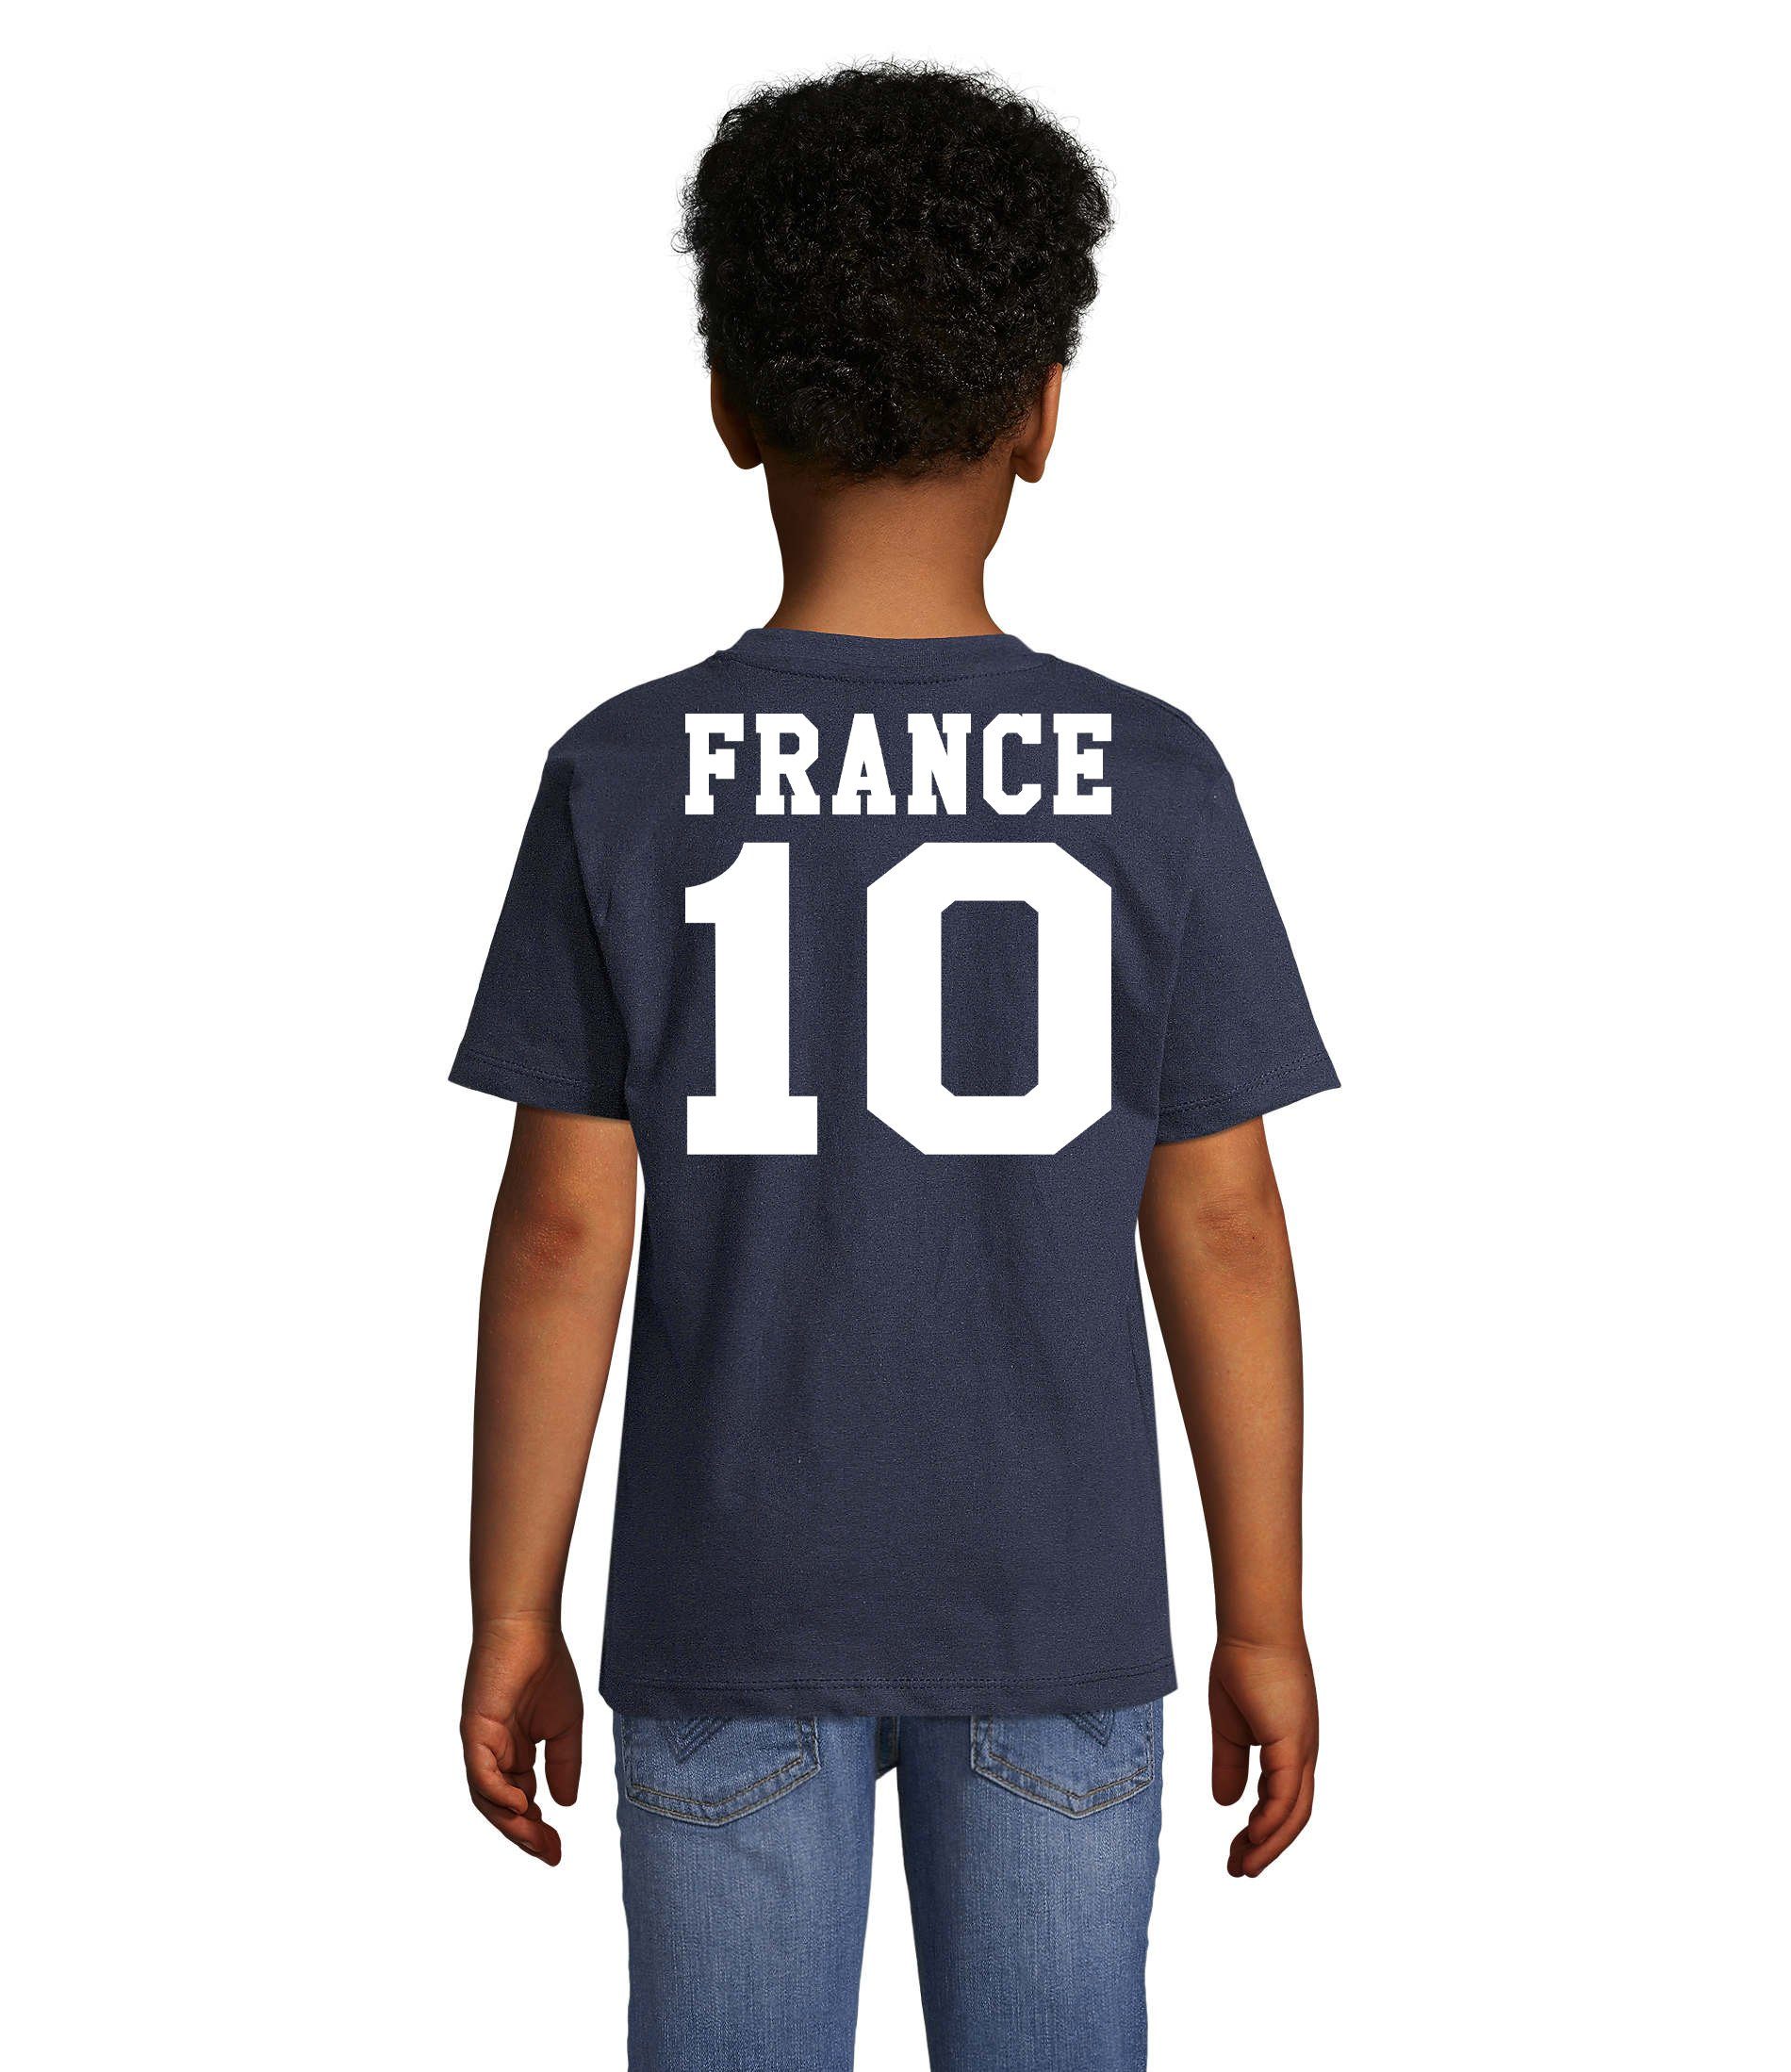 & Sport Weltmeister Kinder Brownie EM T-Shirt Fußball France Frankreich Trikot Blondie